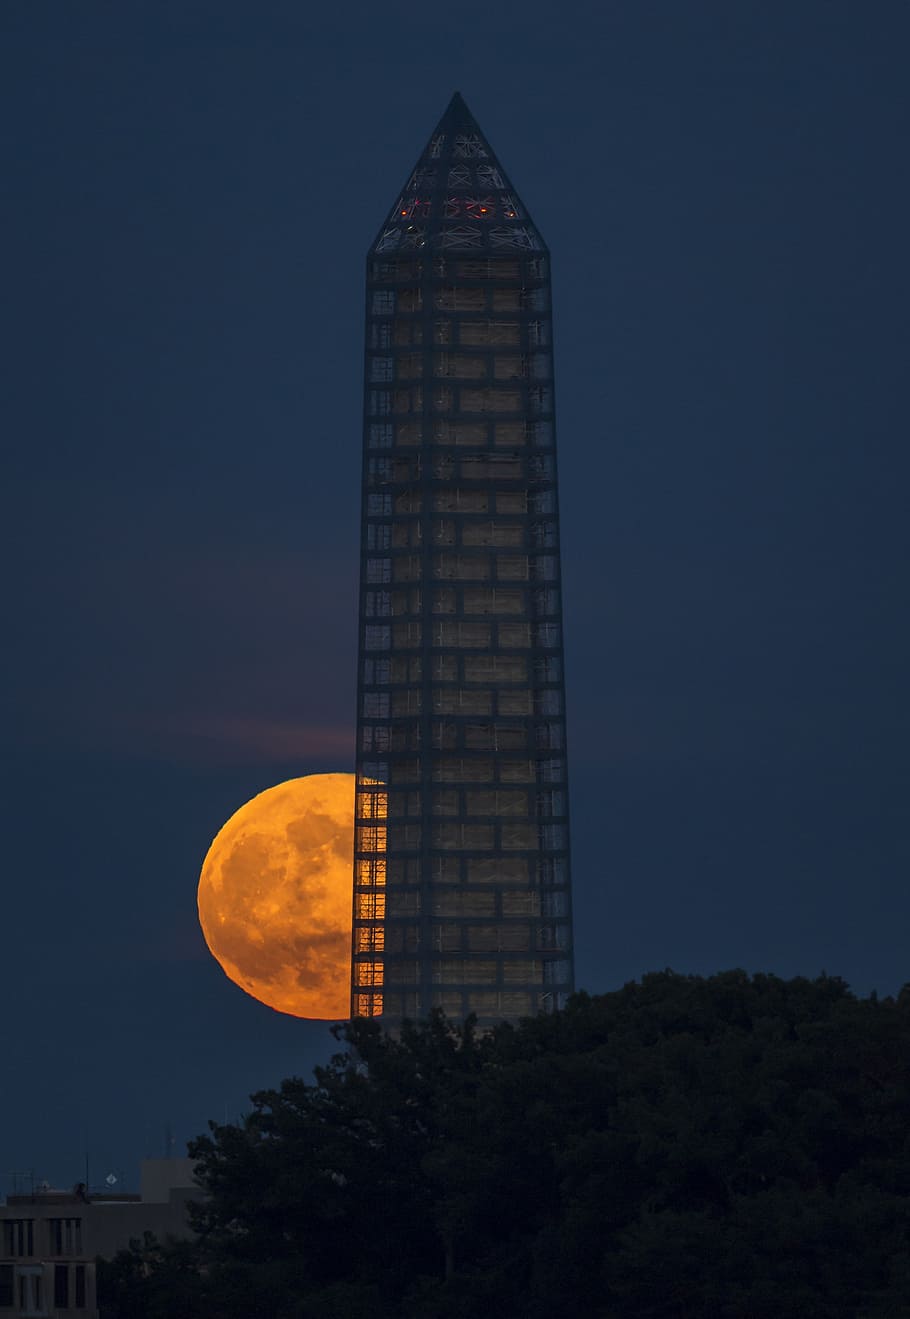 superluna, completo, perigeo, noche, monumento a washington, brillante, luz, nubes, distrito de columbia, dc